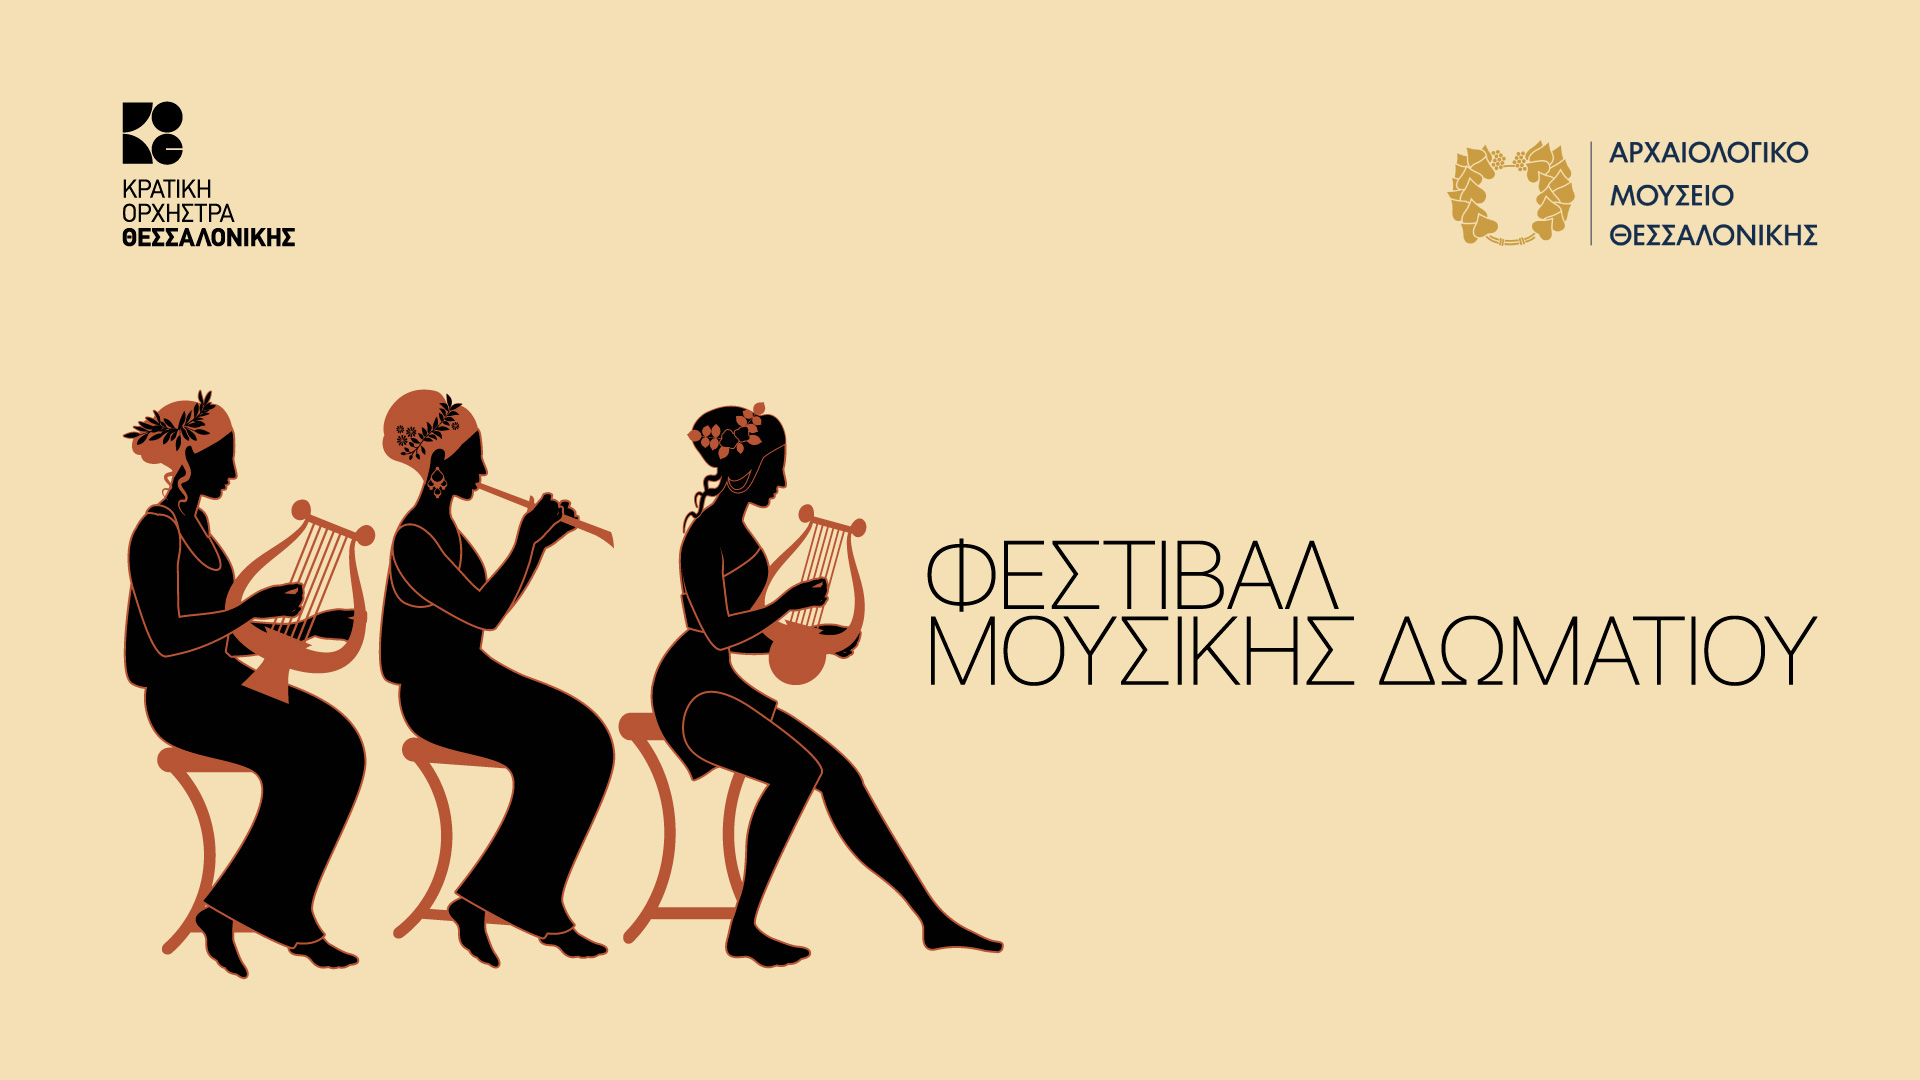 Με sold out συναυλία ξεκινά το Φεστιβάλ Μουσικής Δωματίου στο Αρχαιολογικό Μουσείο Θεσσαλονίκης σε συνεργασία με την ΚΟΘ